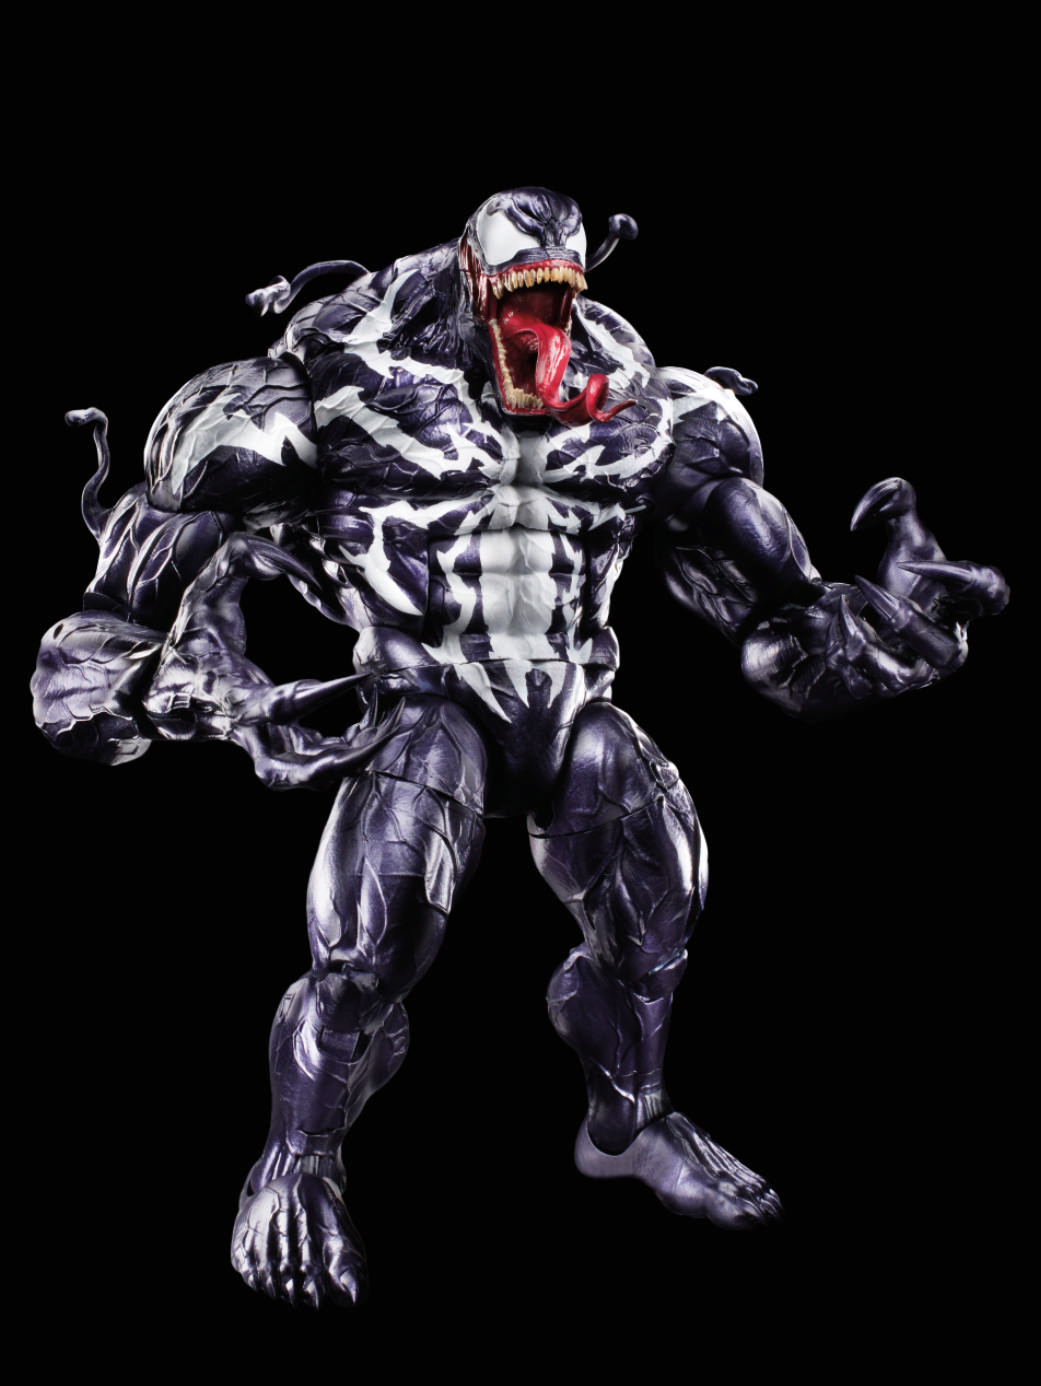 New Images Of Marvel Legends Venom Wave Released